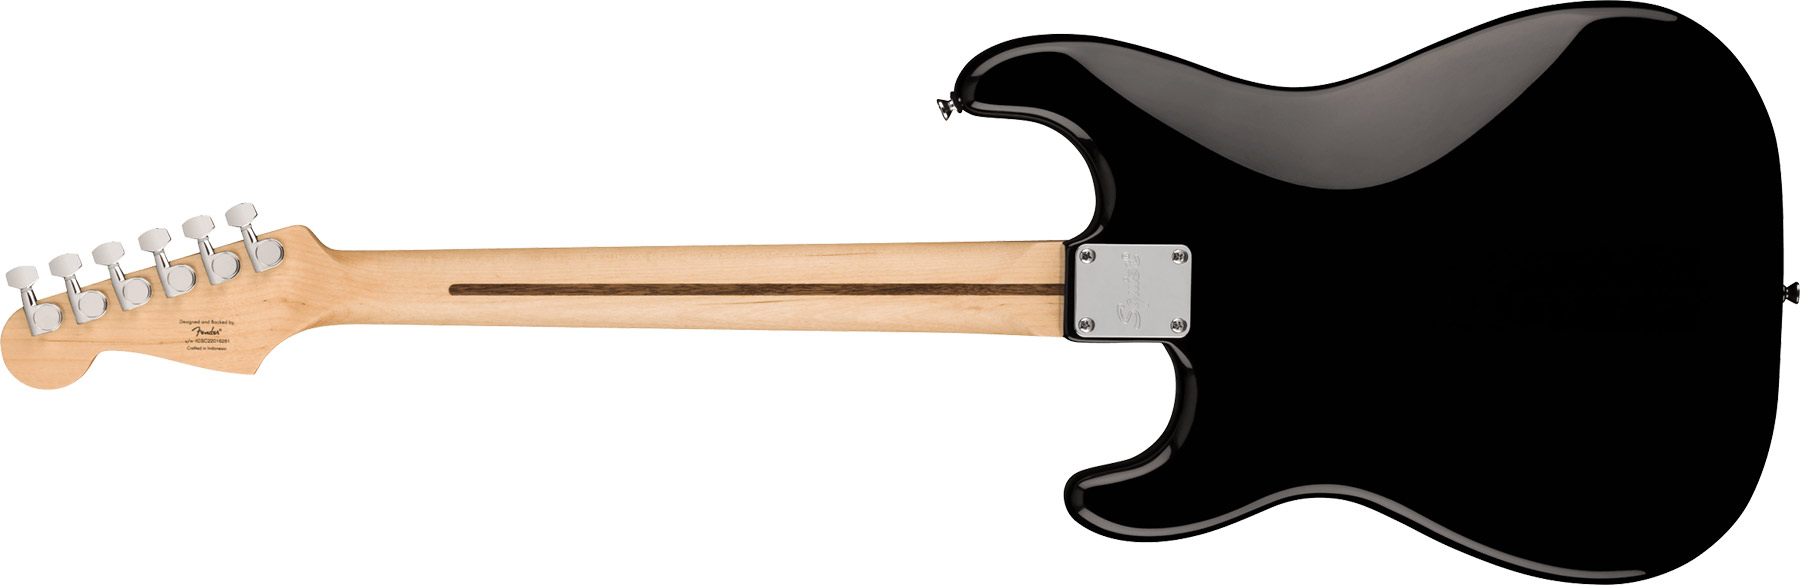 Squier Strat Sonic Hardtail H Ht Lau - Black - Str shape electric guitar - Variation 1